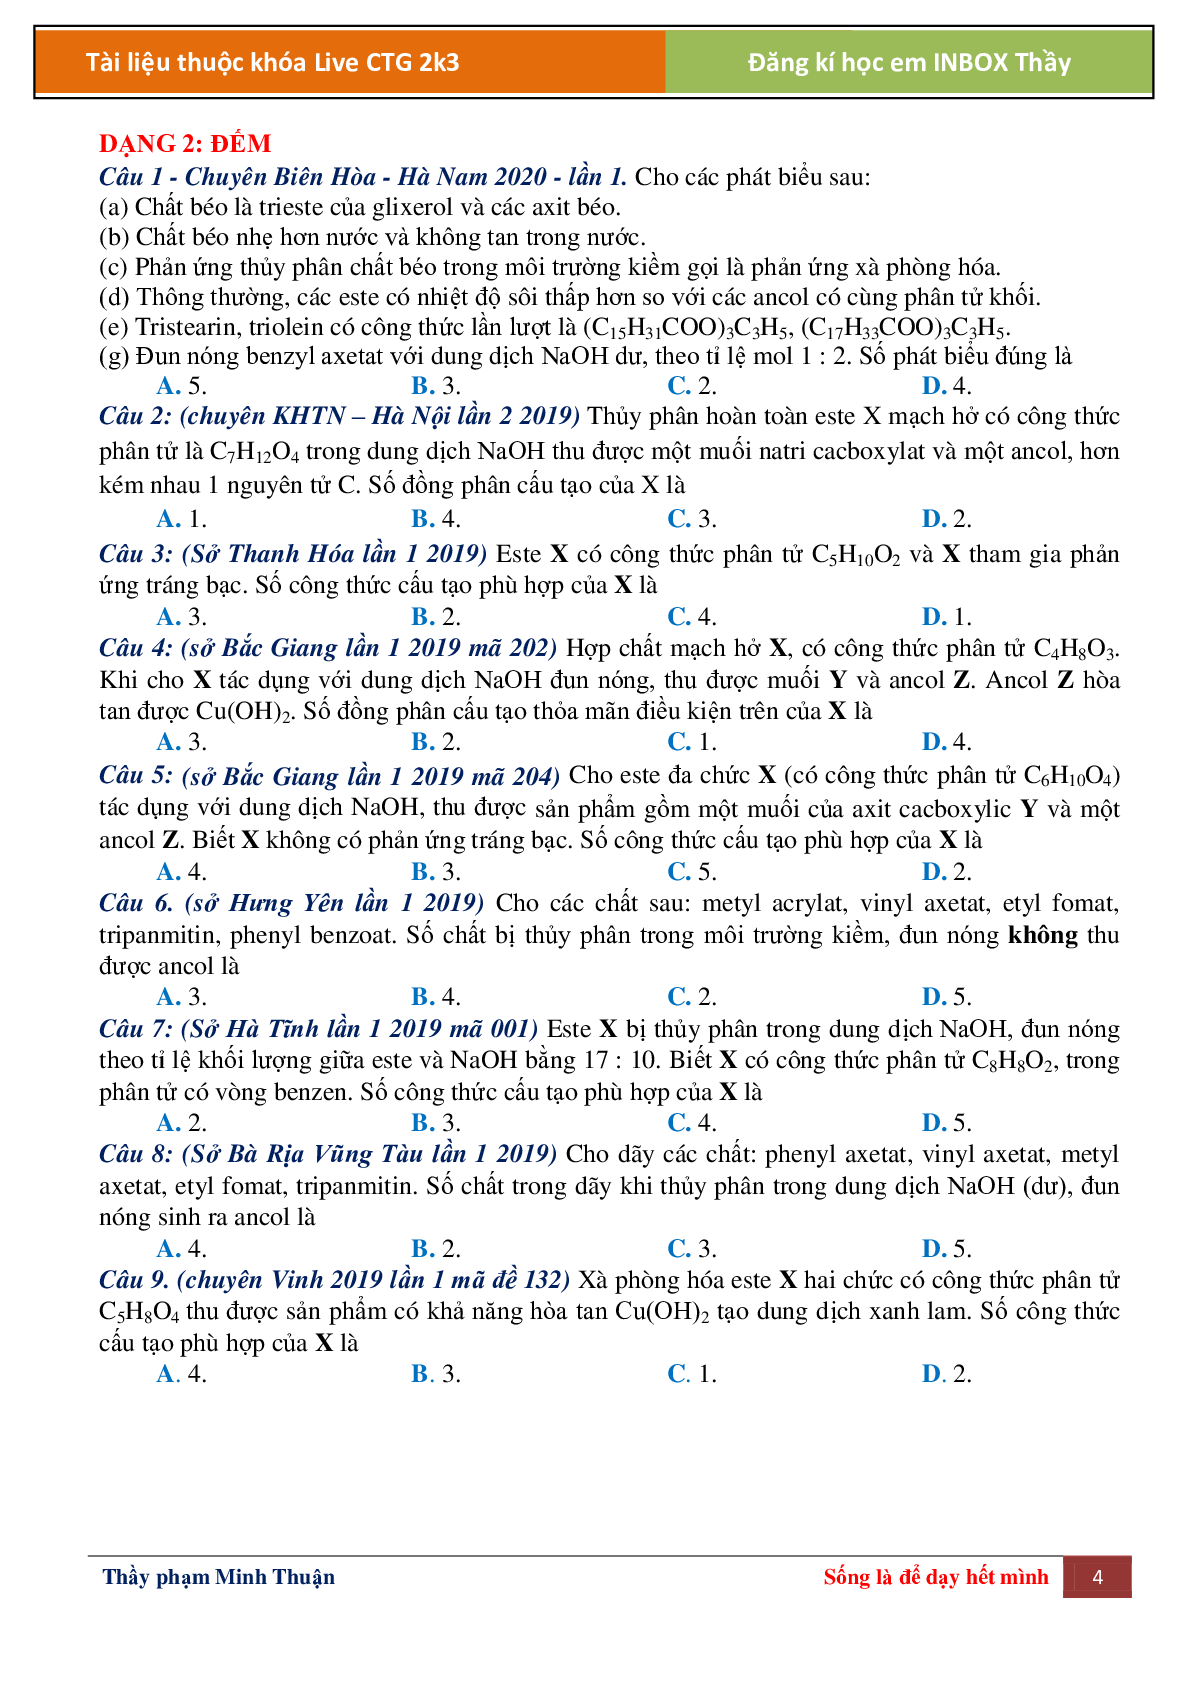 Lý thuyết Este chọn, đếm, tìm chất môn hóa học lớp 12 (trang 4)